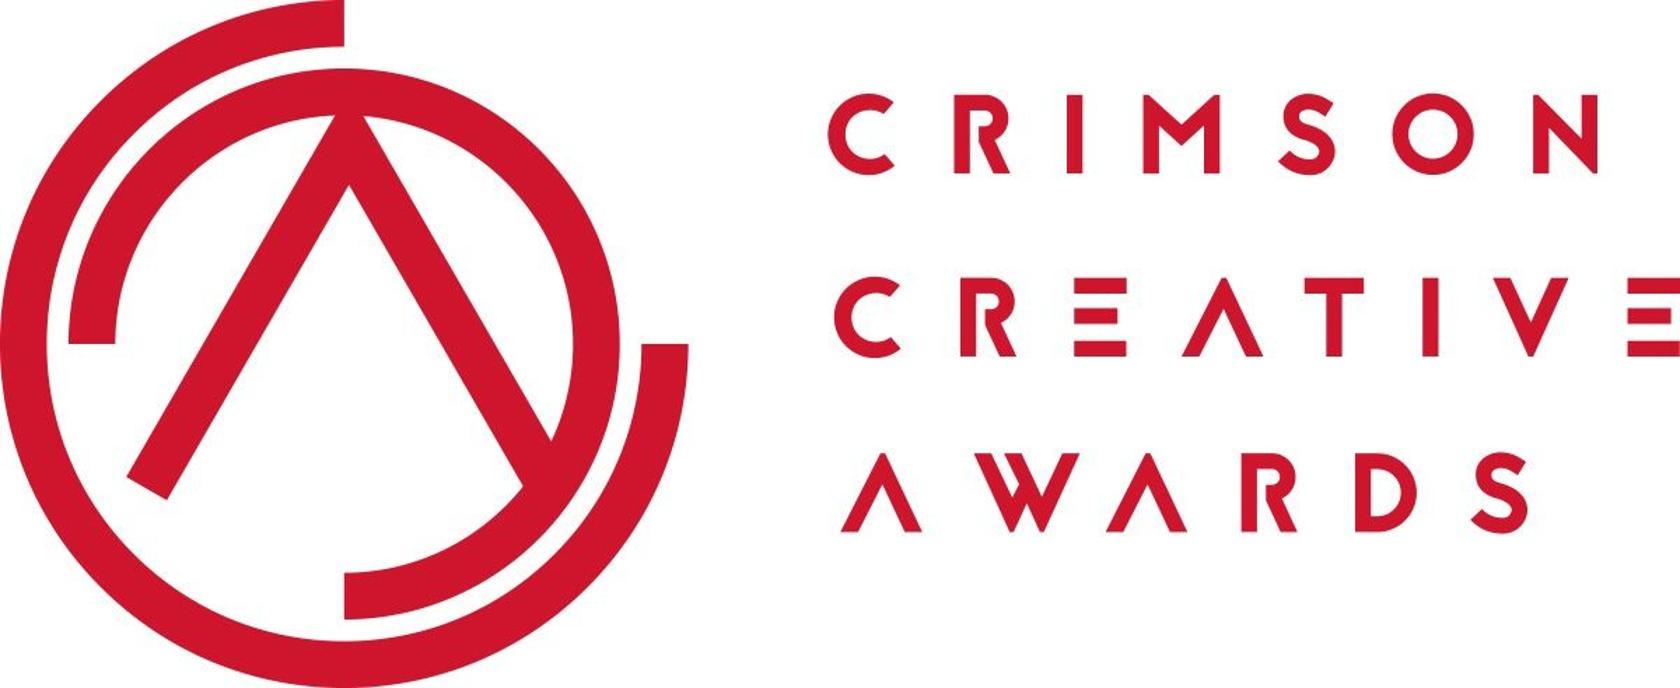 Crimson Creative Awards